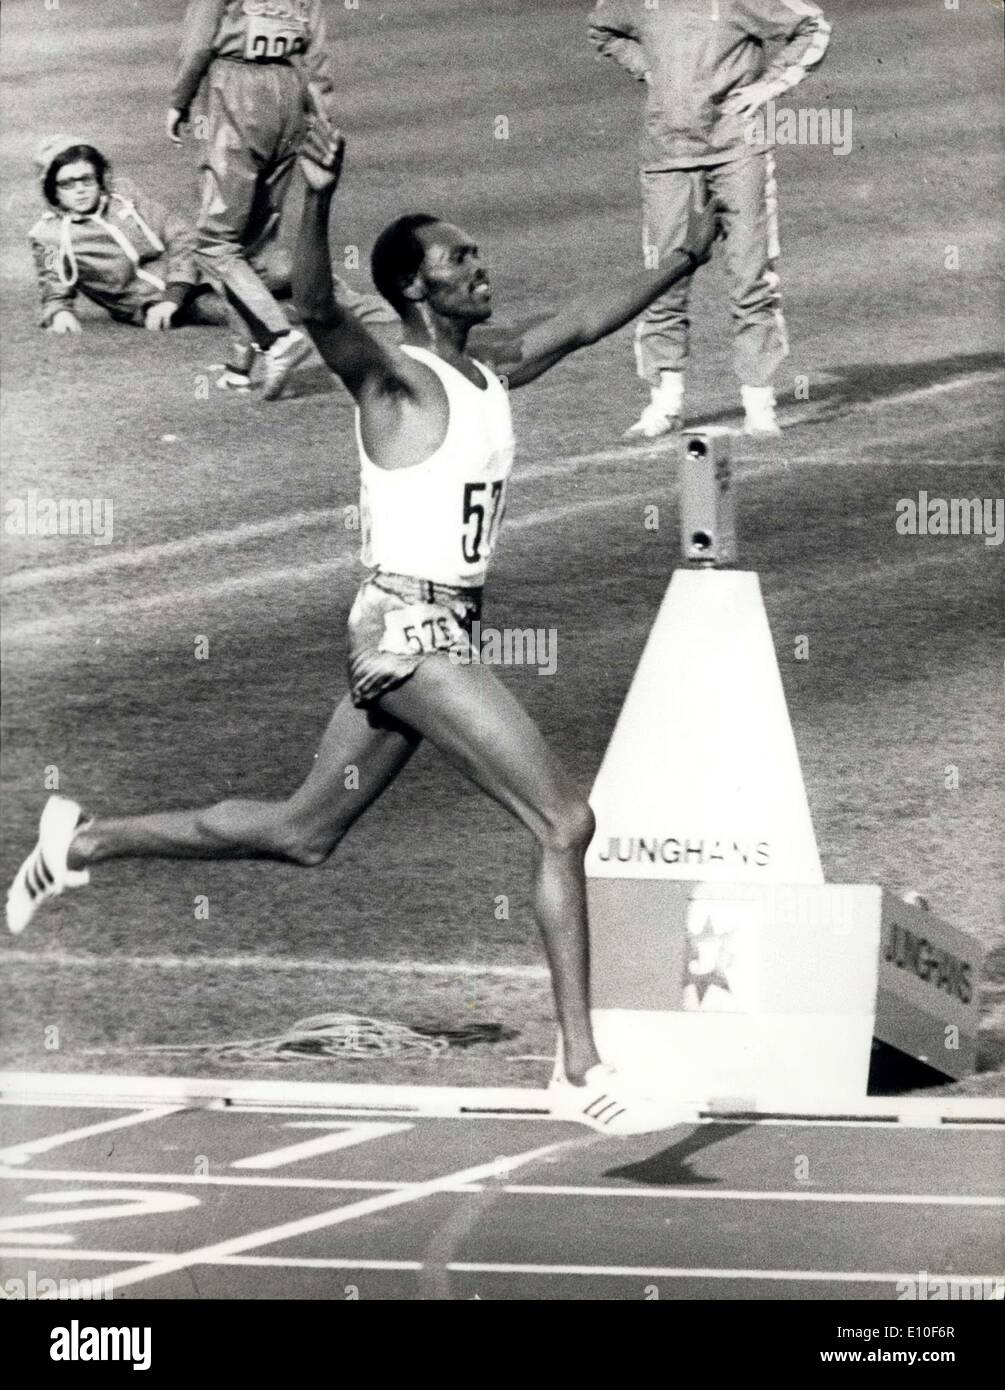 Sett. 07, 1972 - Giochi olimpici di Monaco di Baviera, Kip Keino del Kenya, raffigurato vincendo i 3 mila metri di siepi finale, durante i Giochi olimpici di Monaco di Baviera, in un record olimpico tempo di 8-23.6. Foto Stock